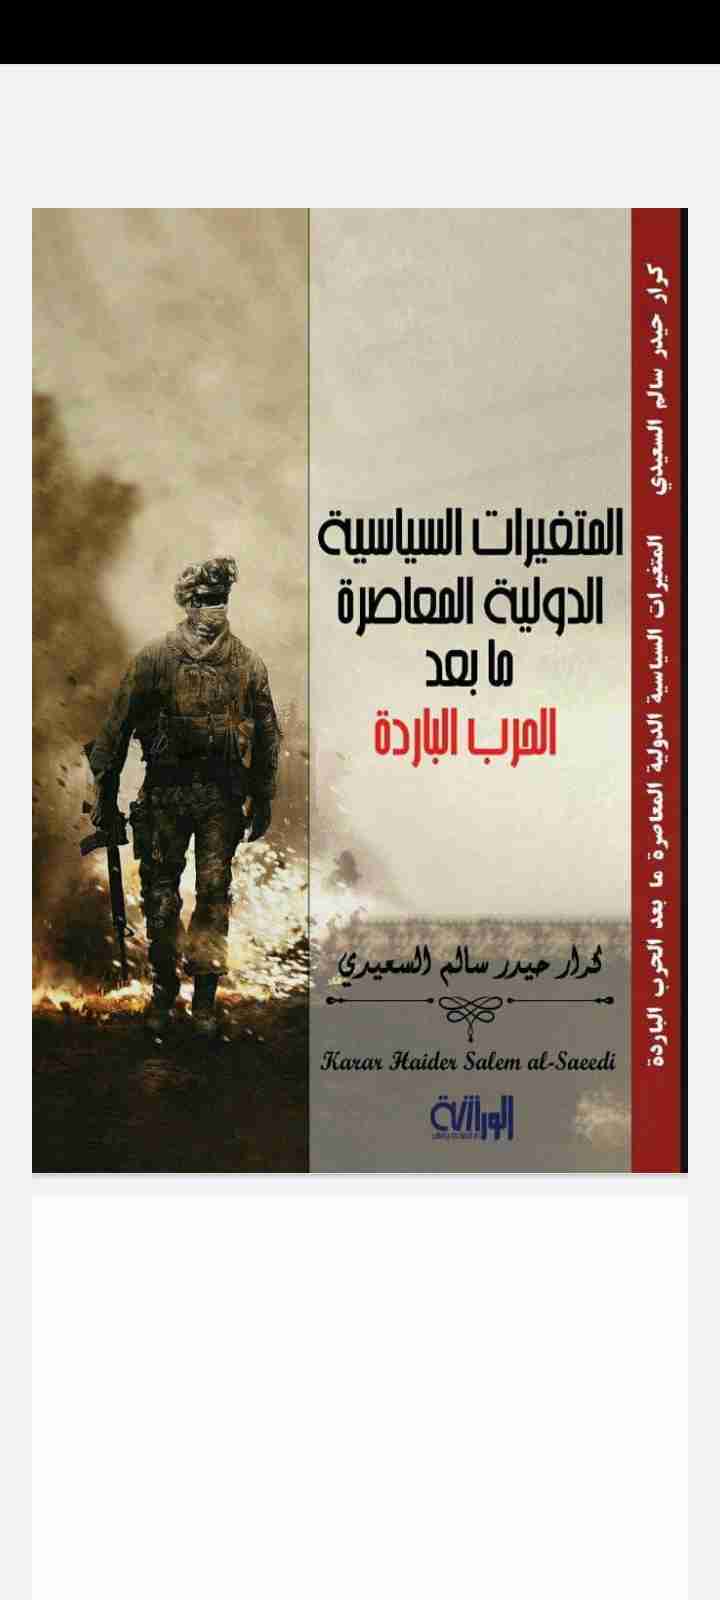 كتاب المتغيرات السياسية الدولية المعاصرة ما بعد الحرب الباردة لـ كرار حيدر سالم السعيدي